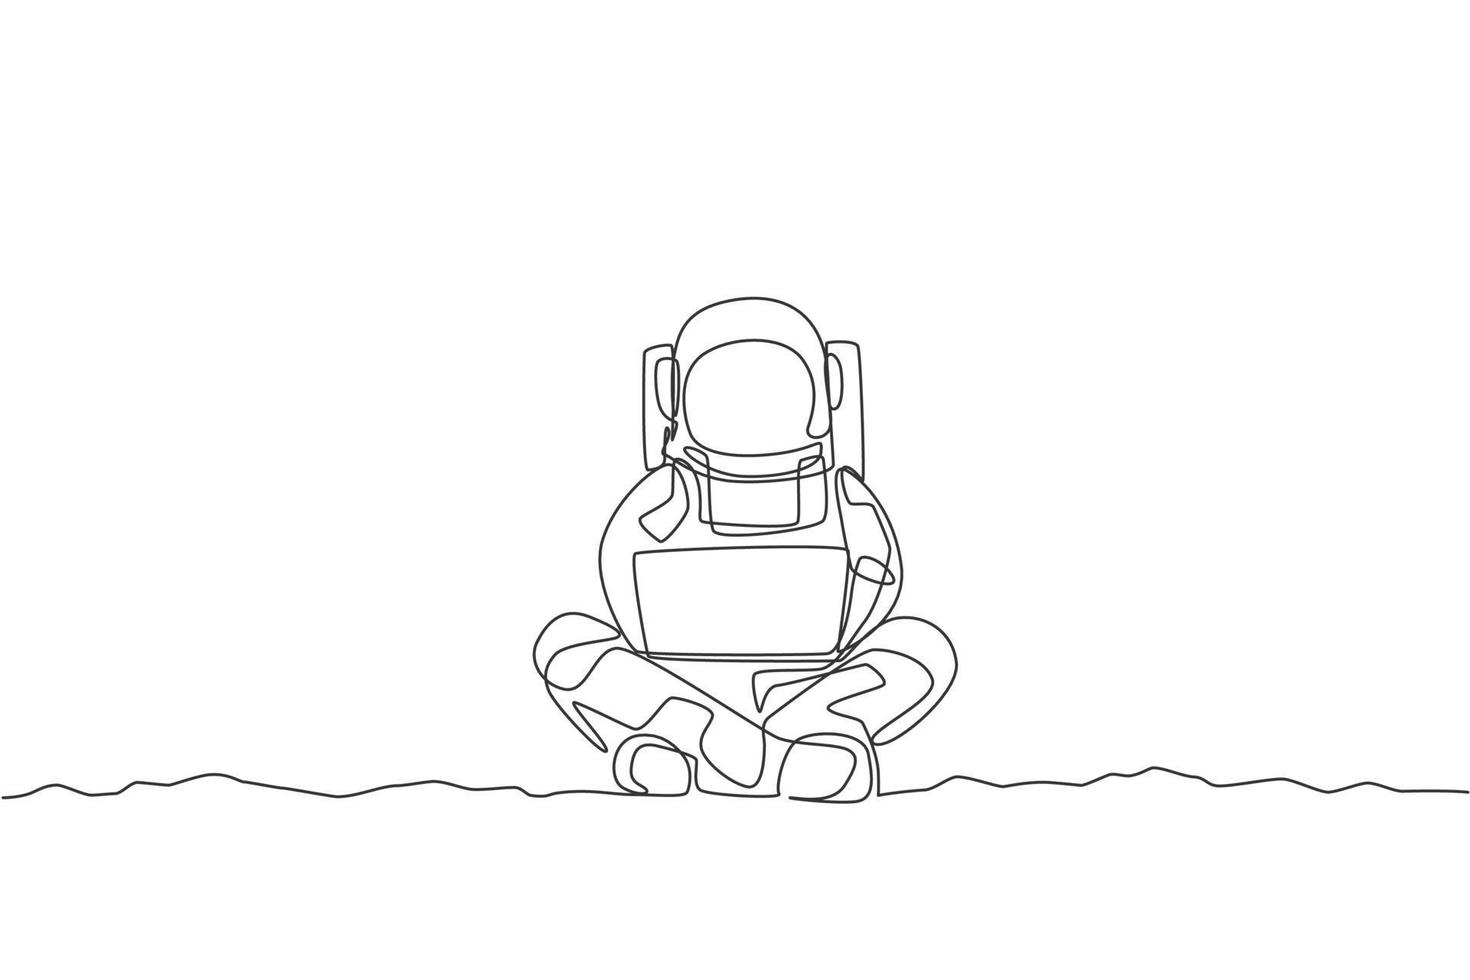 en kontinuerlig linje ritning av ung rymdman på rymddräkt sitter i månytan medan du skriver. astronaut affärskontor med djupt rymdkoncept. dynamisk enkel linje rita design vektor illustration